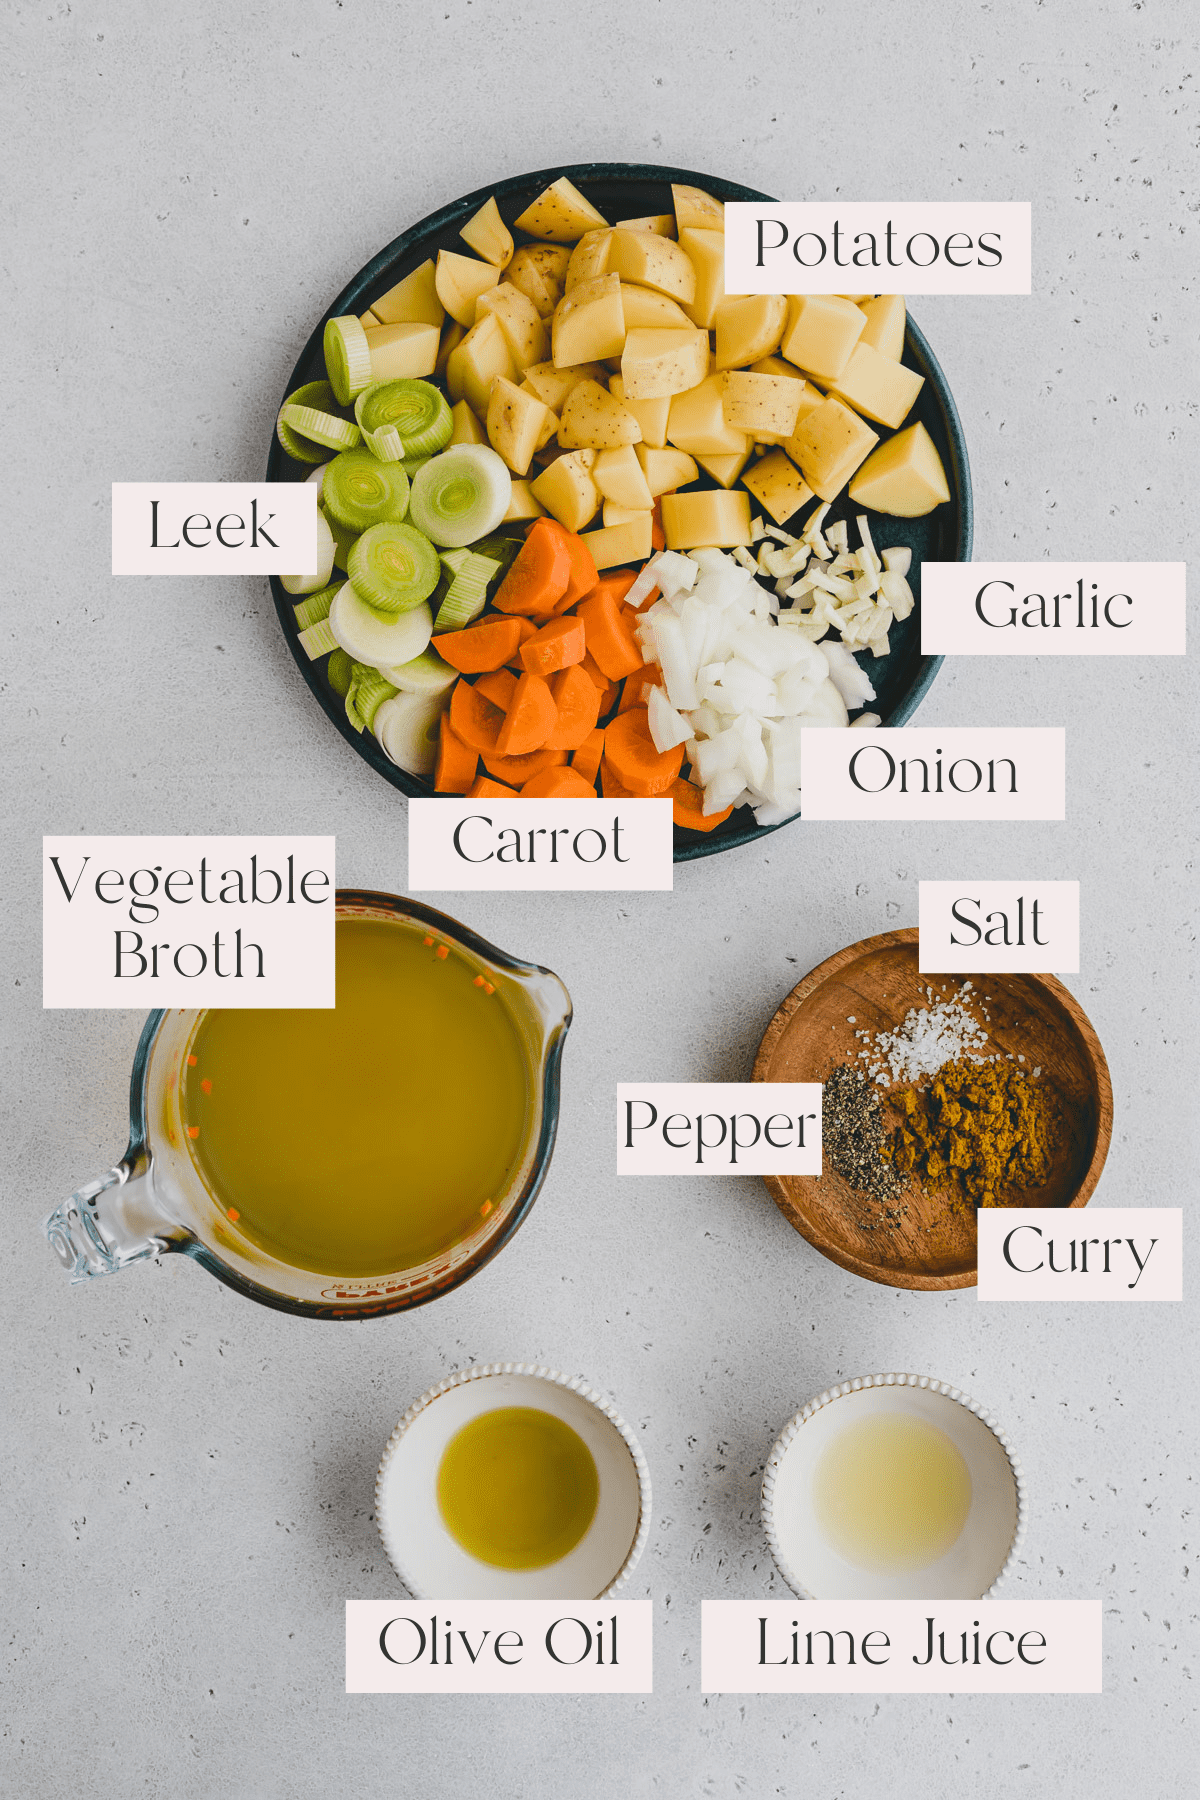 Potato Leek Soup Ingredients